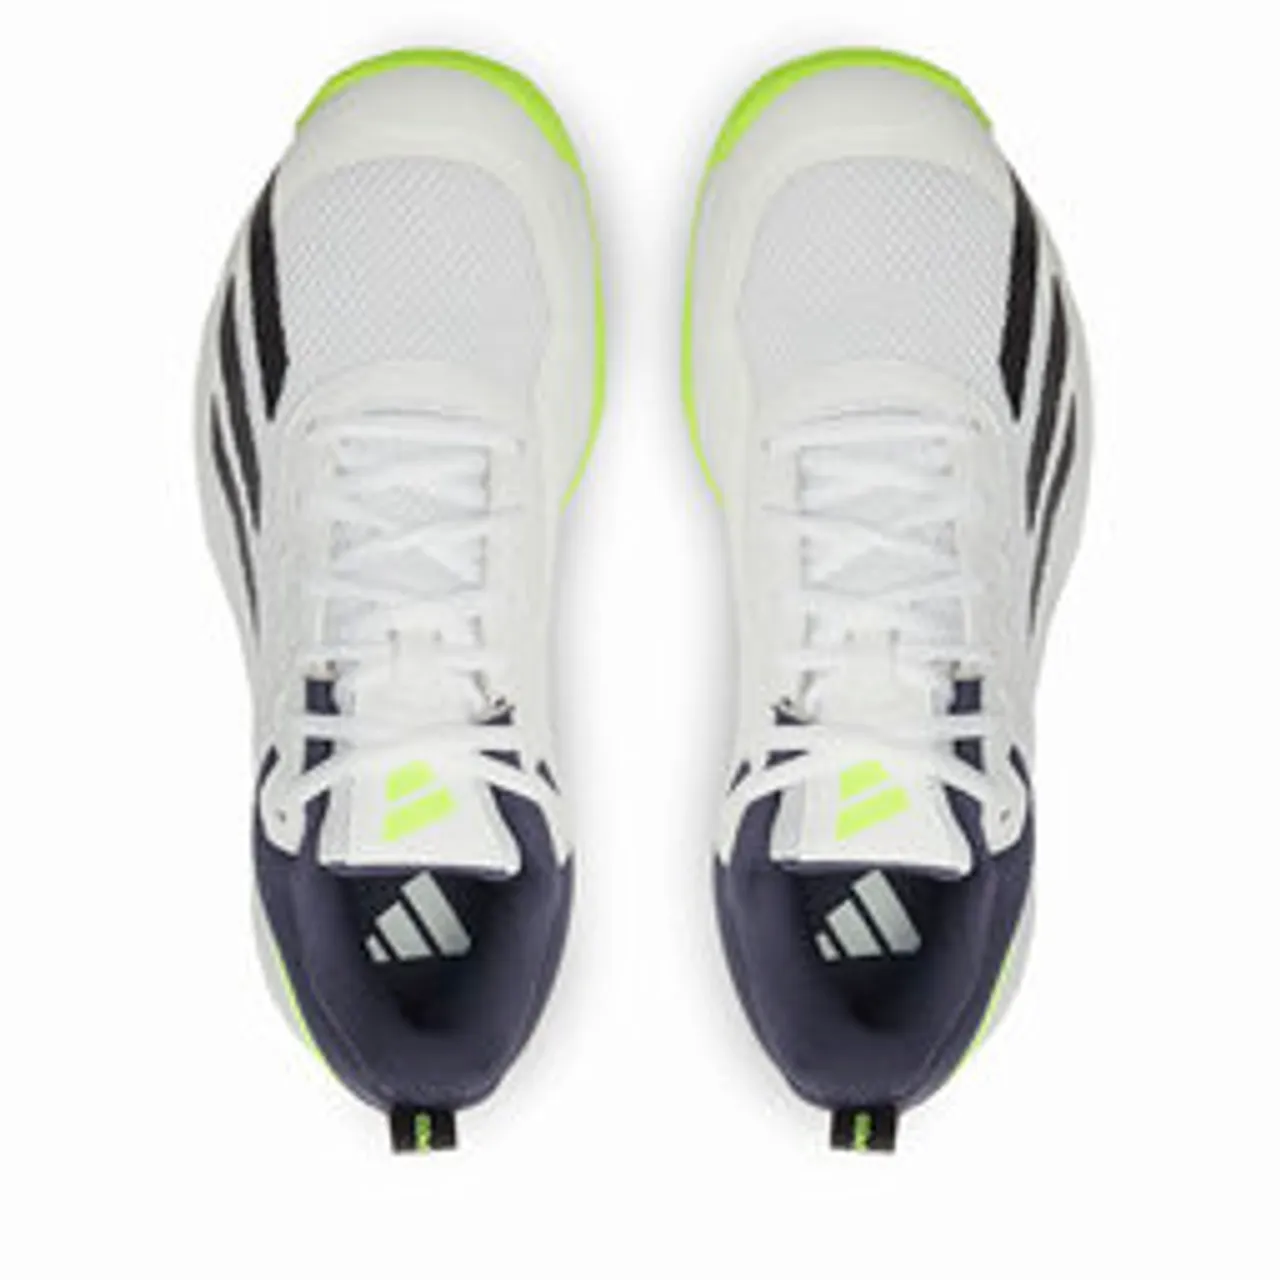 Schuhe adidas Courtflash Speed Tennis Shoes IG9539 Weiß